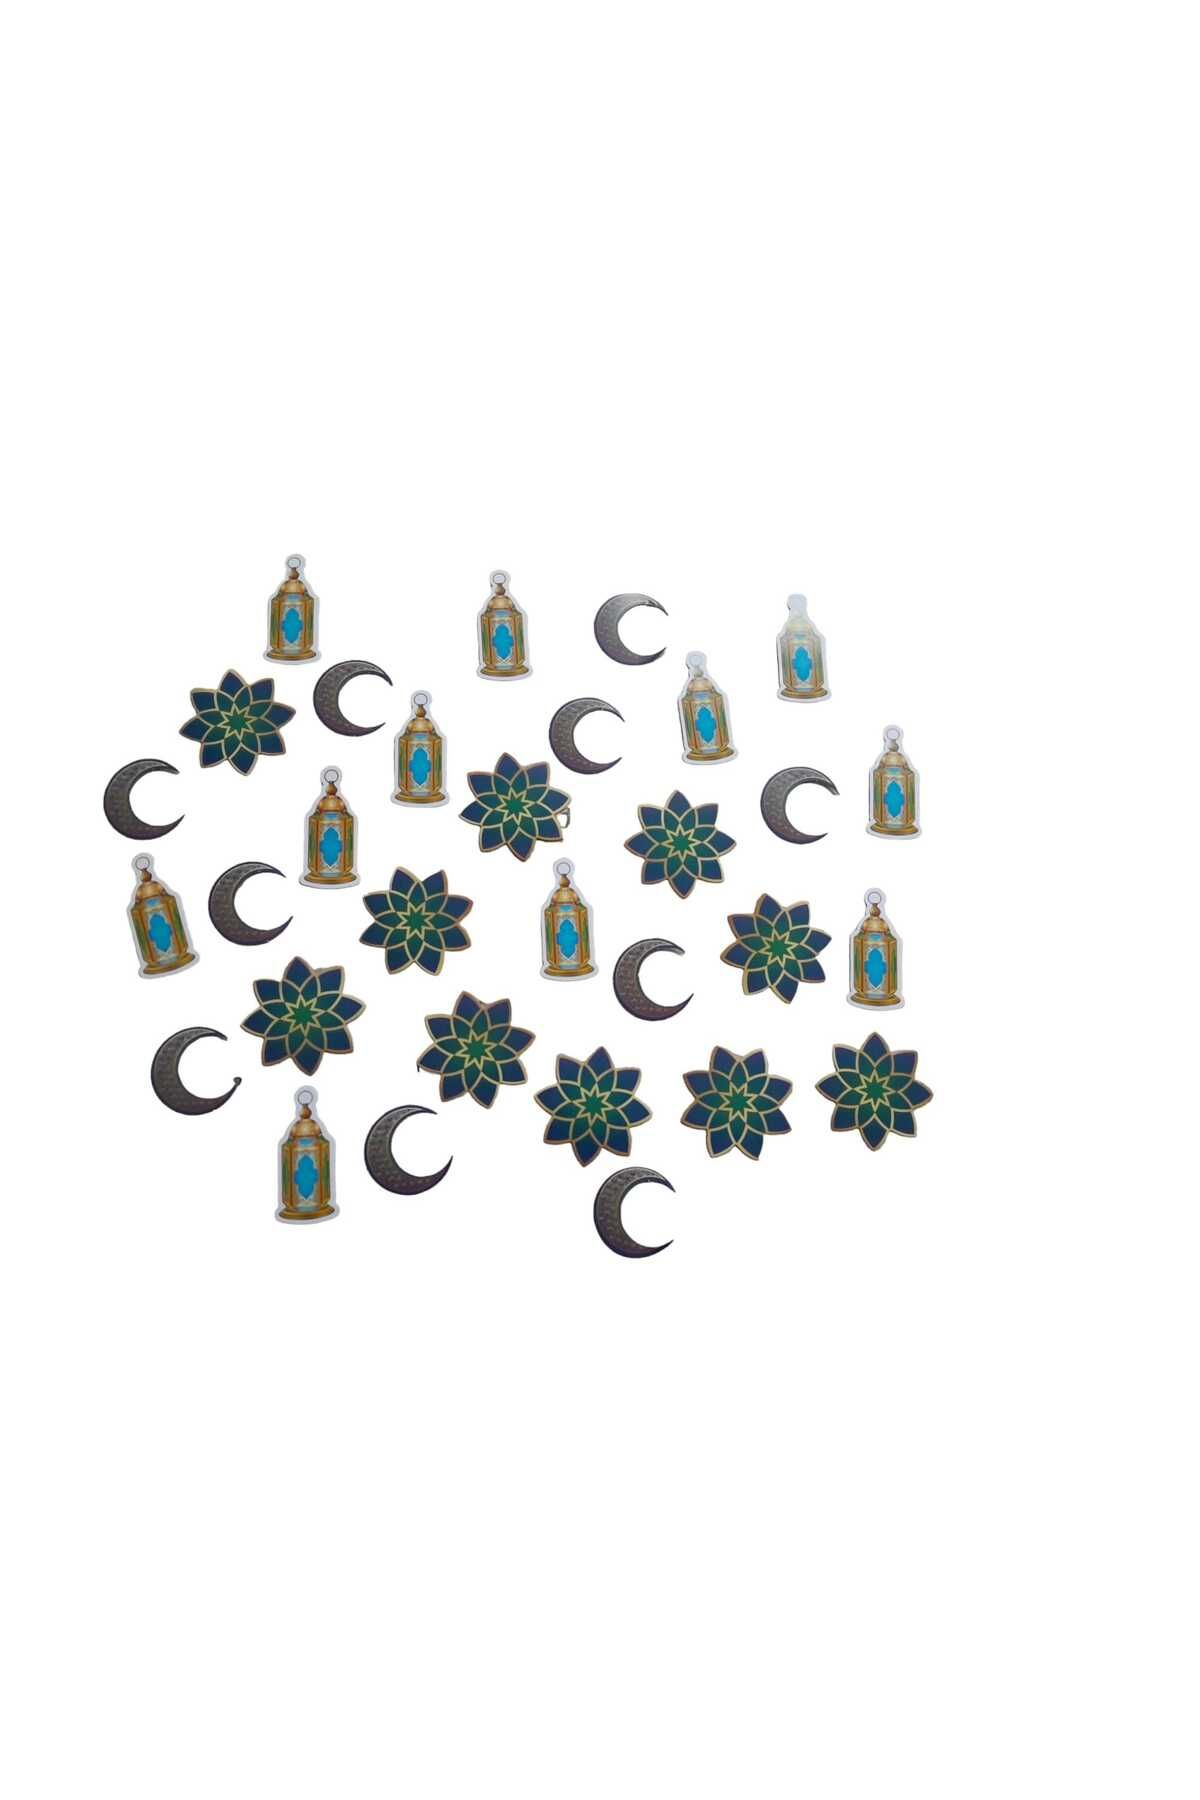 Cansüs Ramazan a Özel 30 Parça Masa Konfetisi